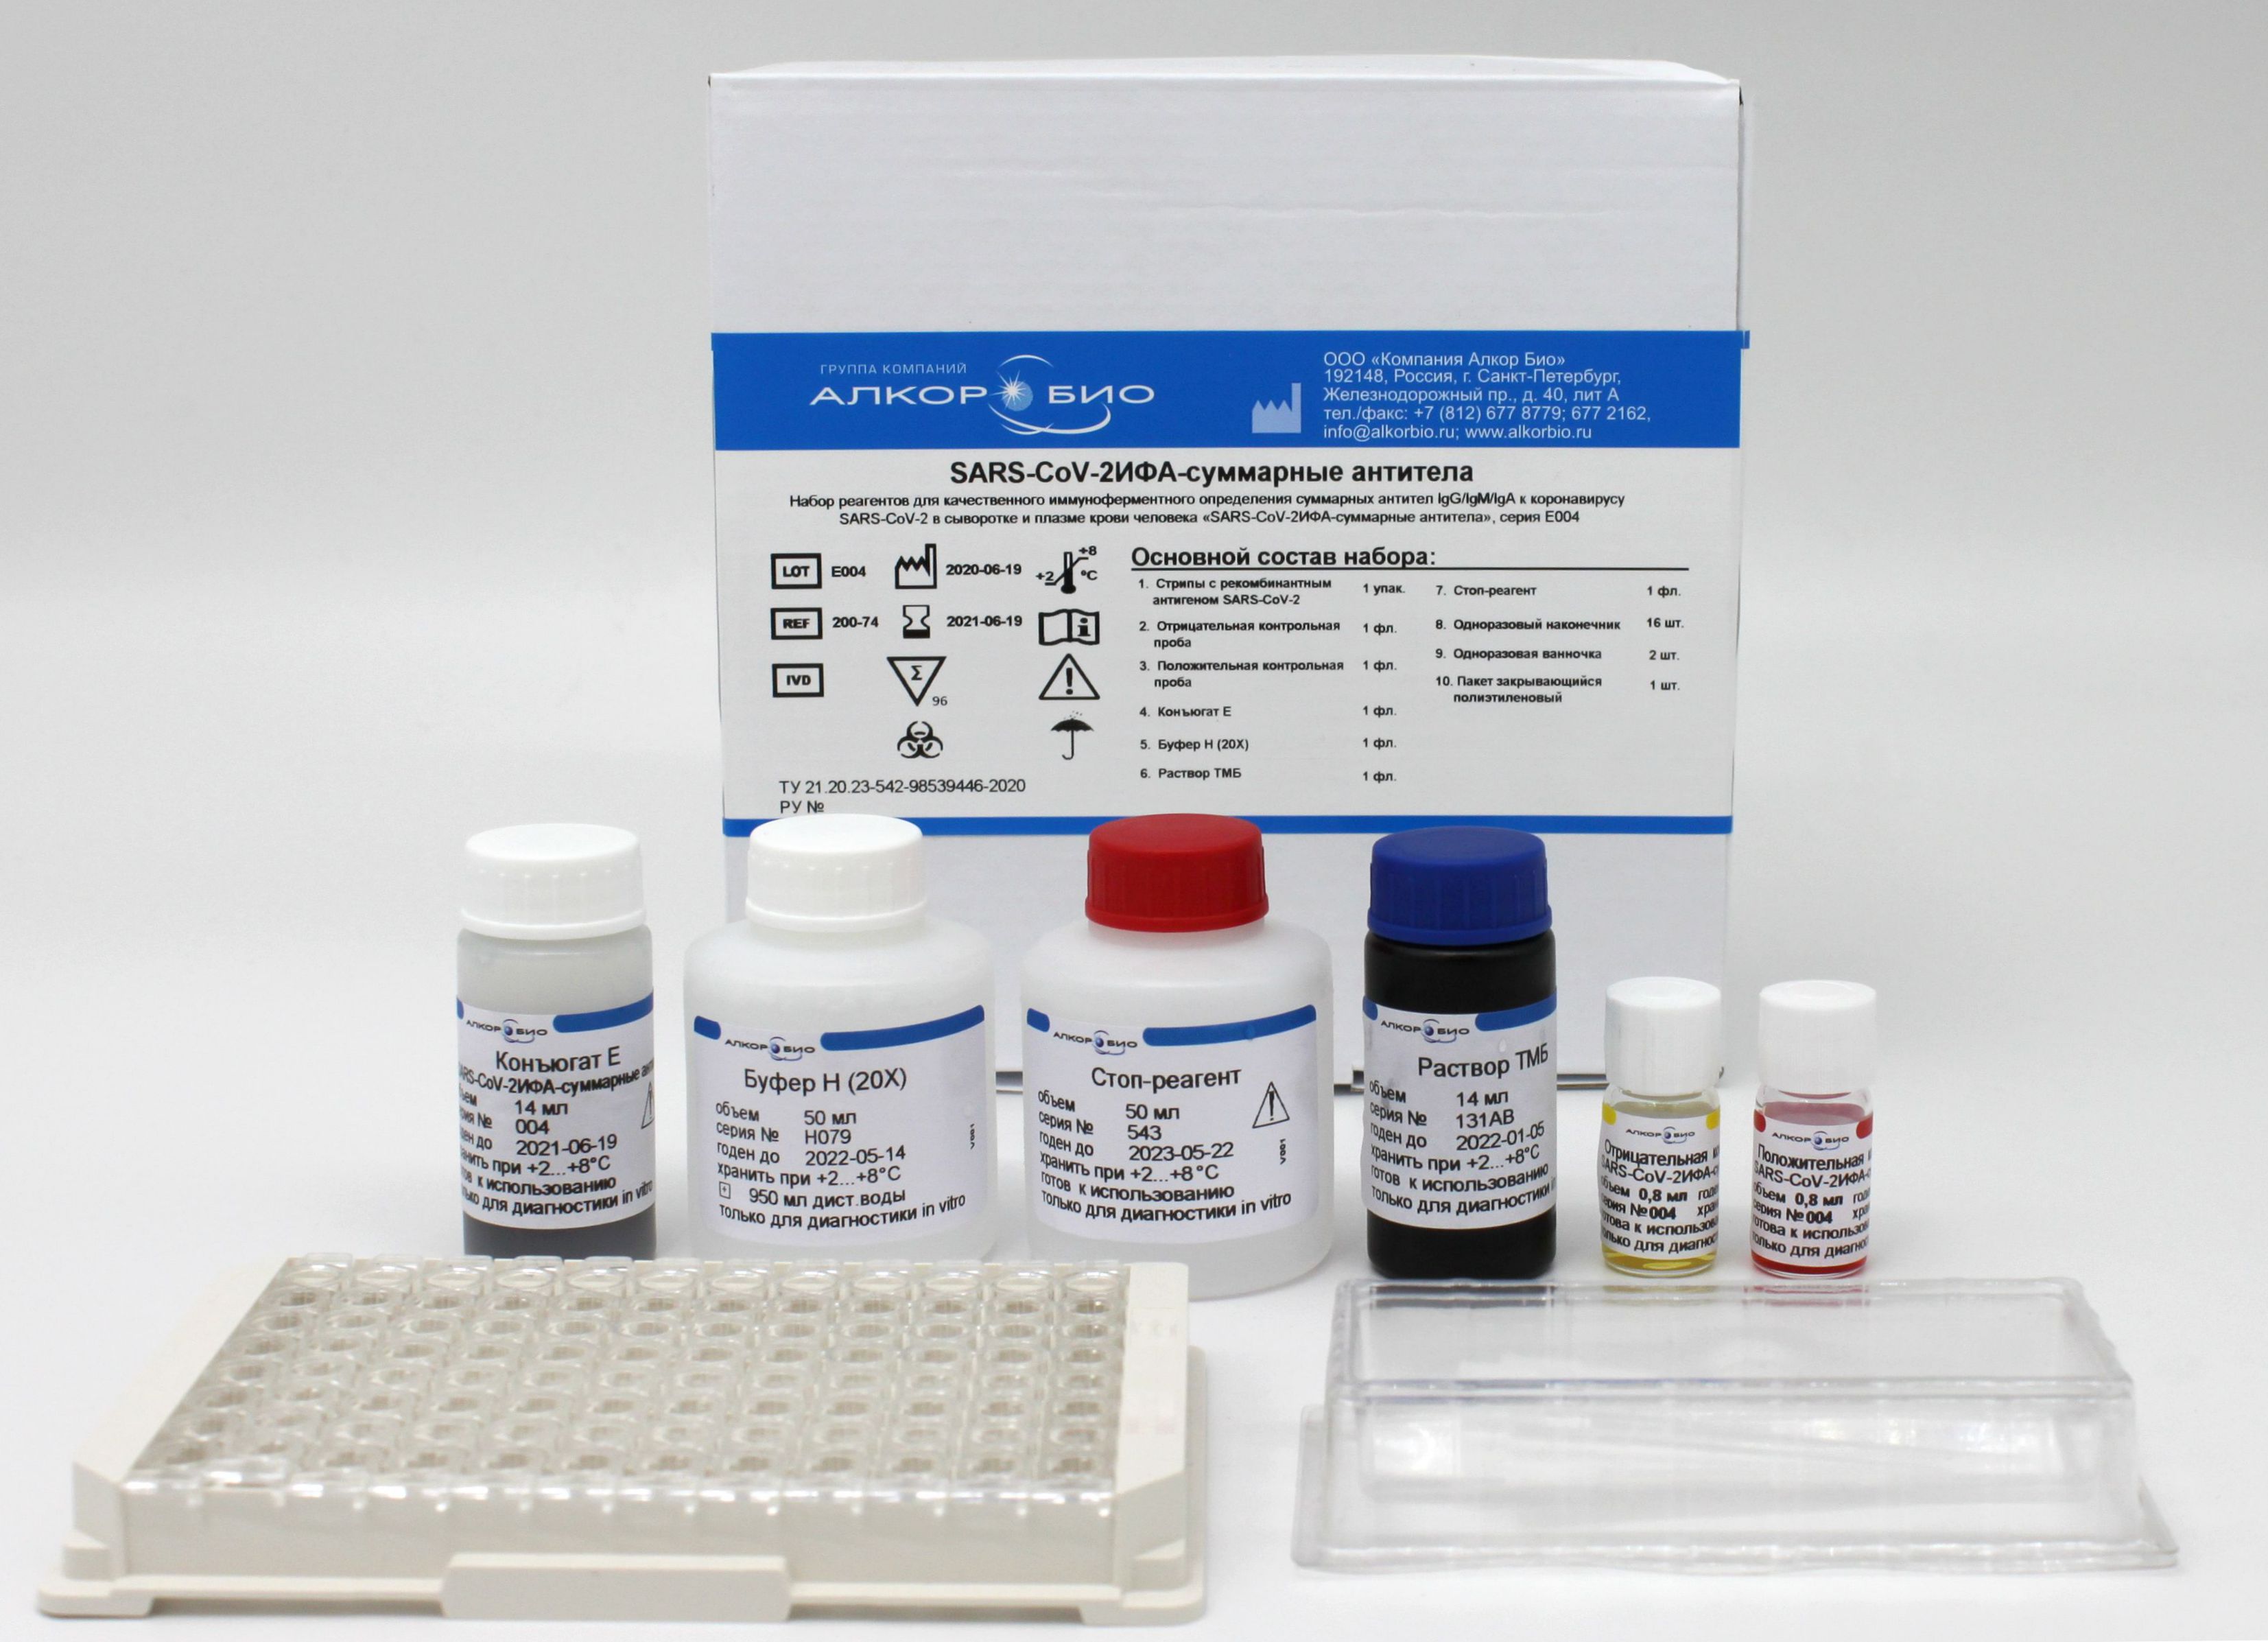 Тест метод ифа. Наборы Алкор био ИФА. Набор реагентов SARS-cov-2 ПЦР. Набор реагентов "ДС-ИФА-анти-HCV-спектр-GM" С-452. Набор для выявления антител методом ИФА.